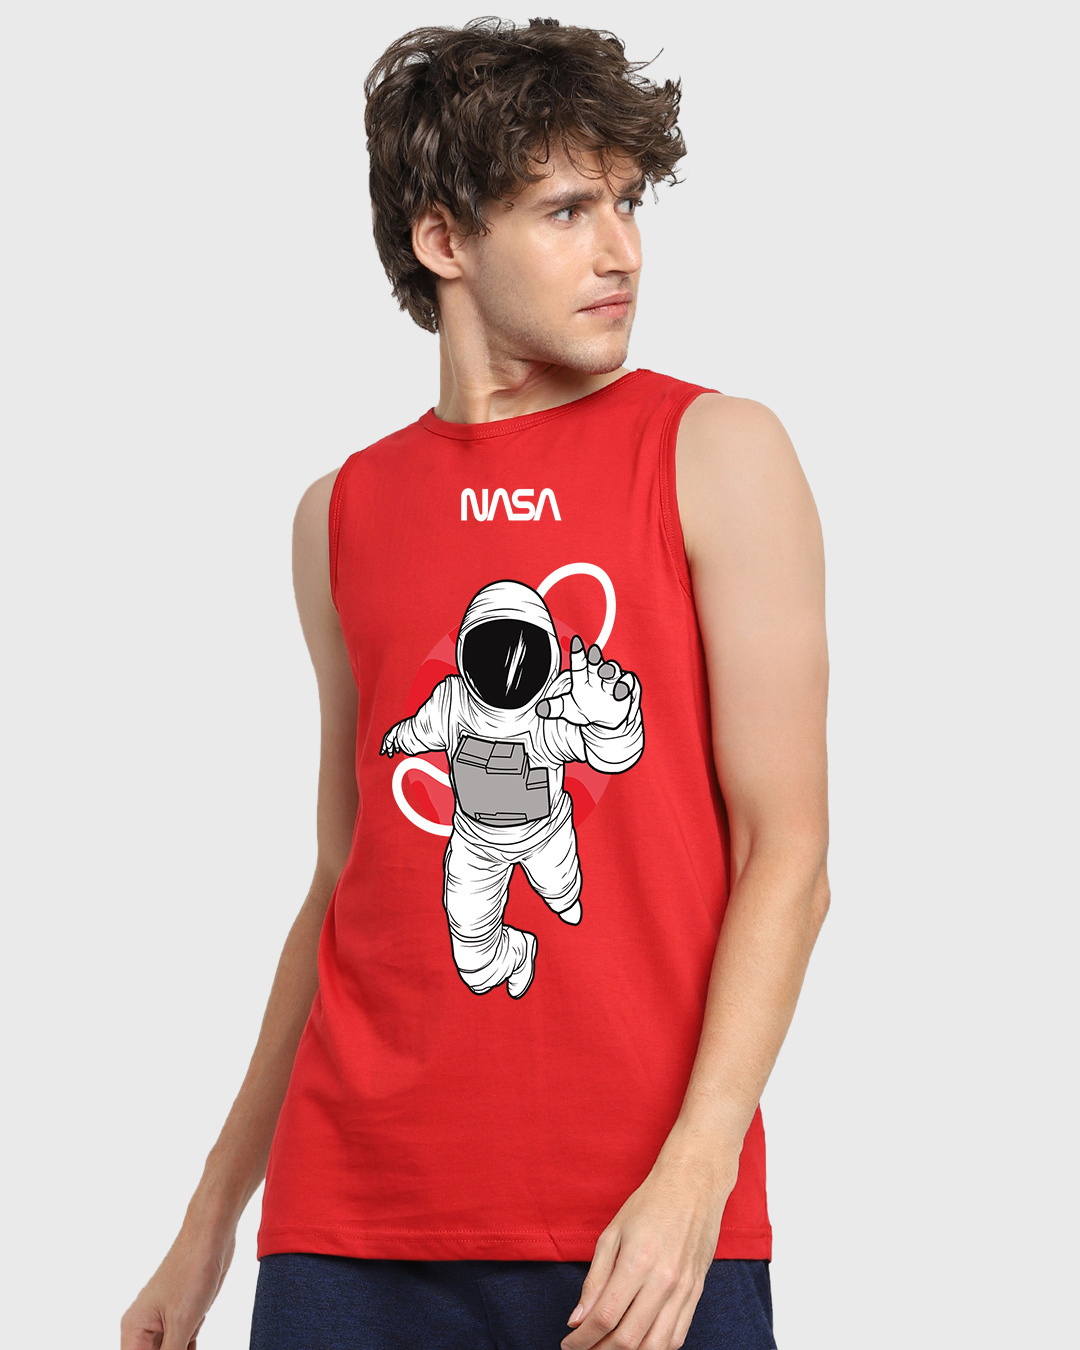 Buy Men's Red NASA Astronaut Graphic Printed Vest Online at Bewakoof